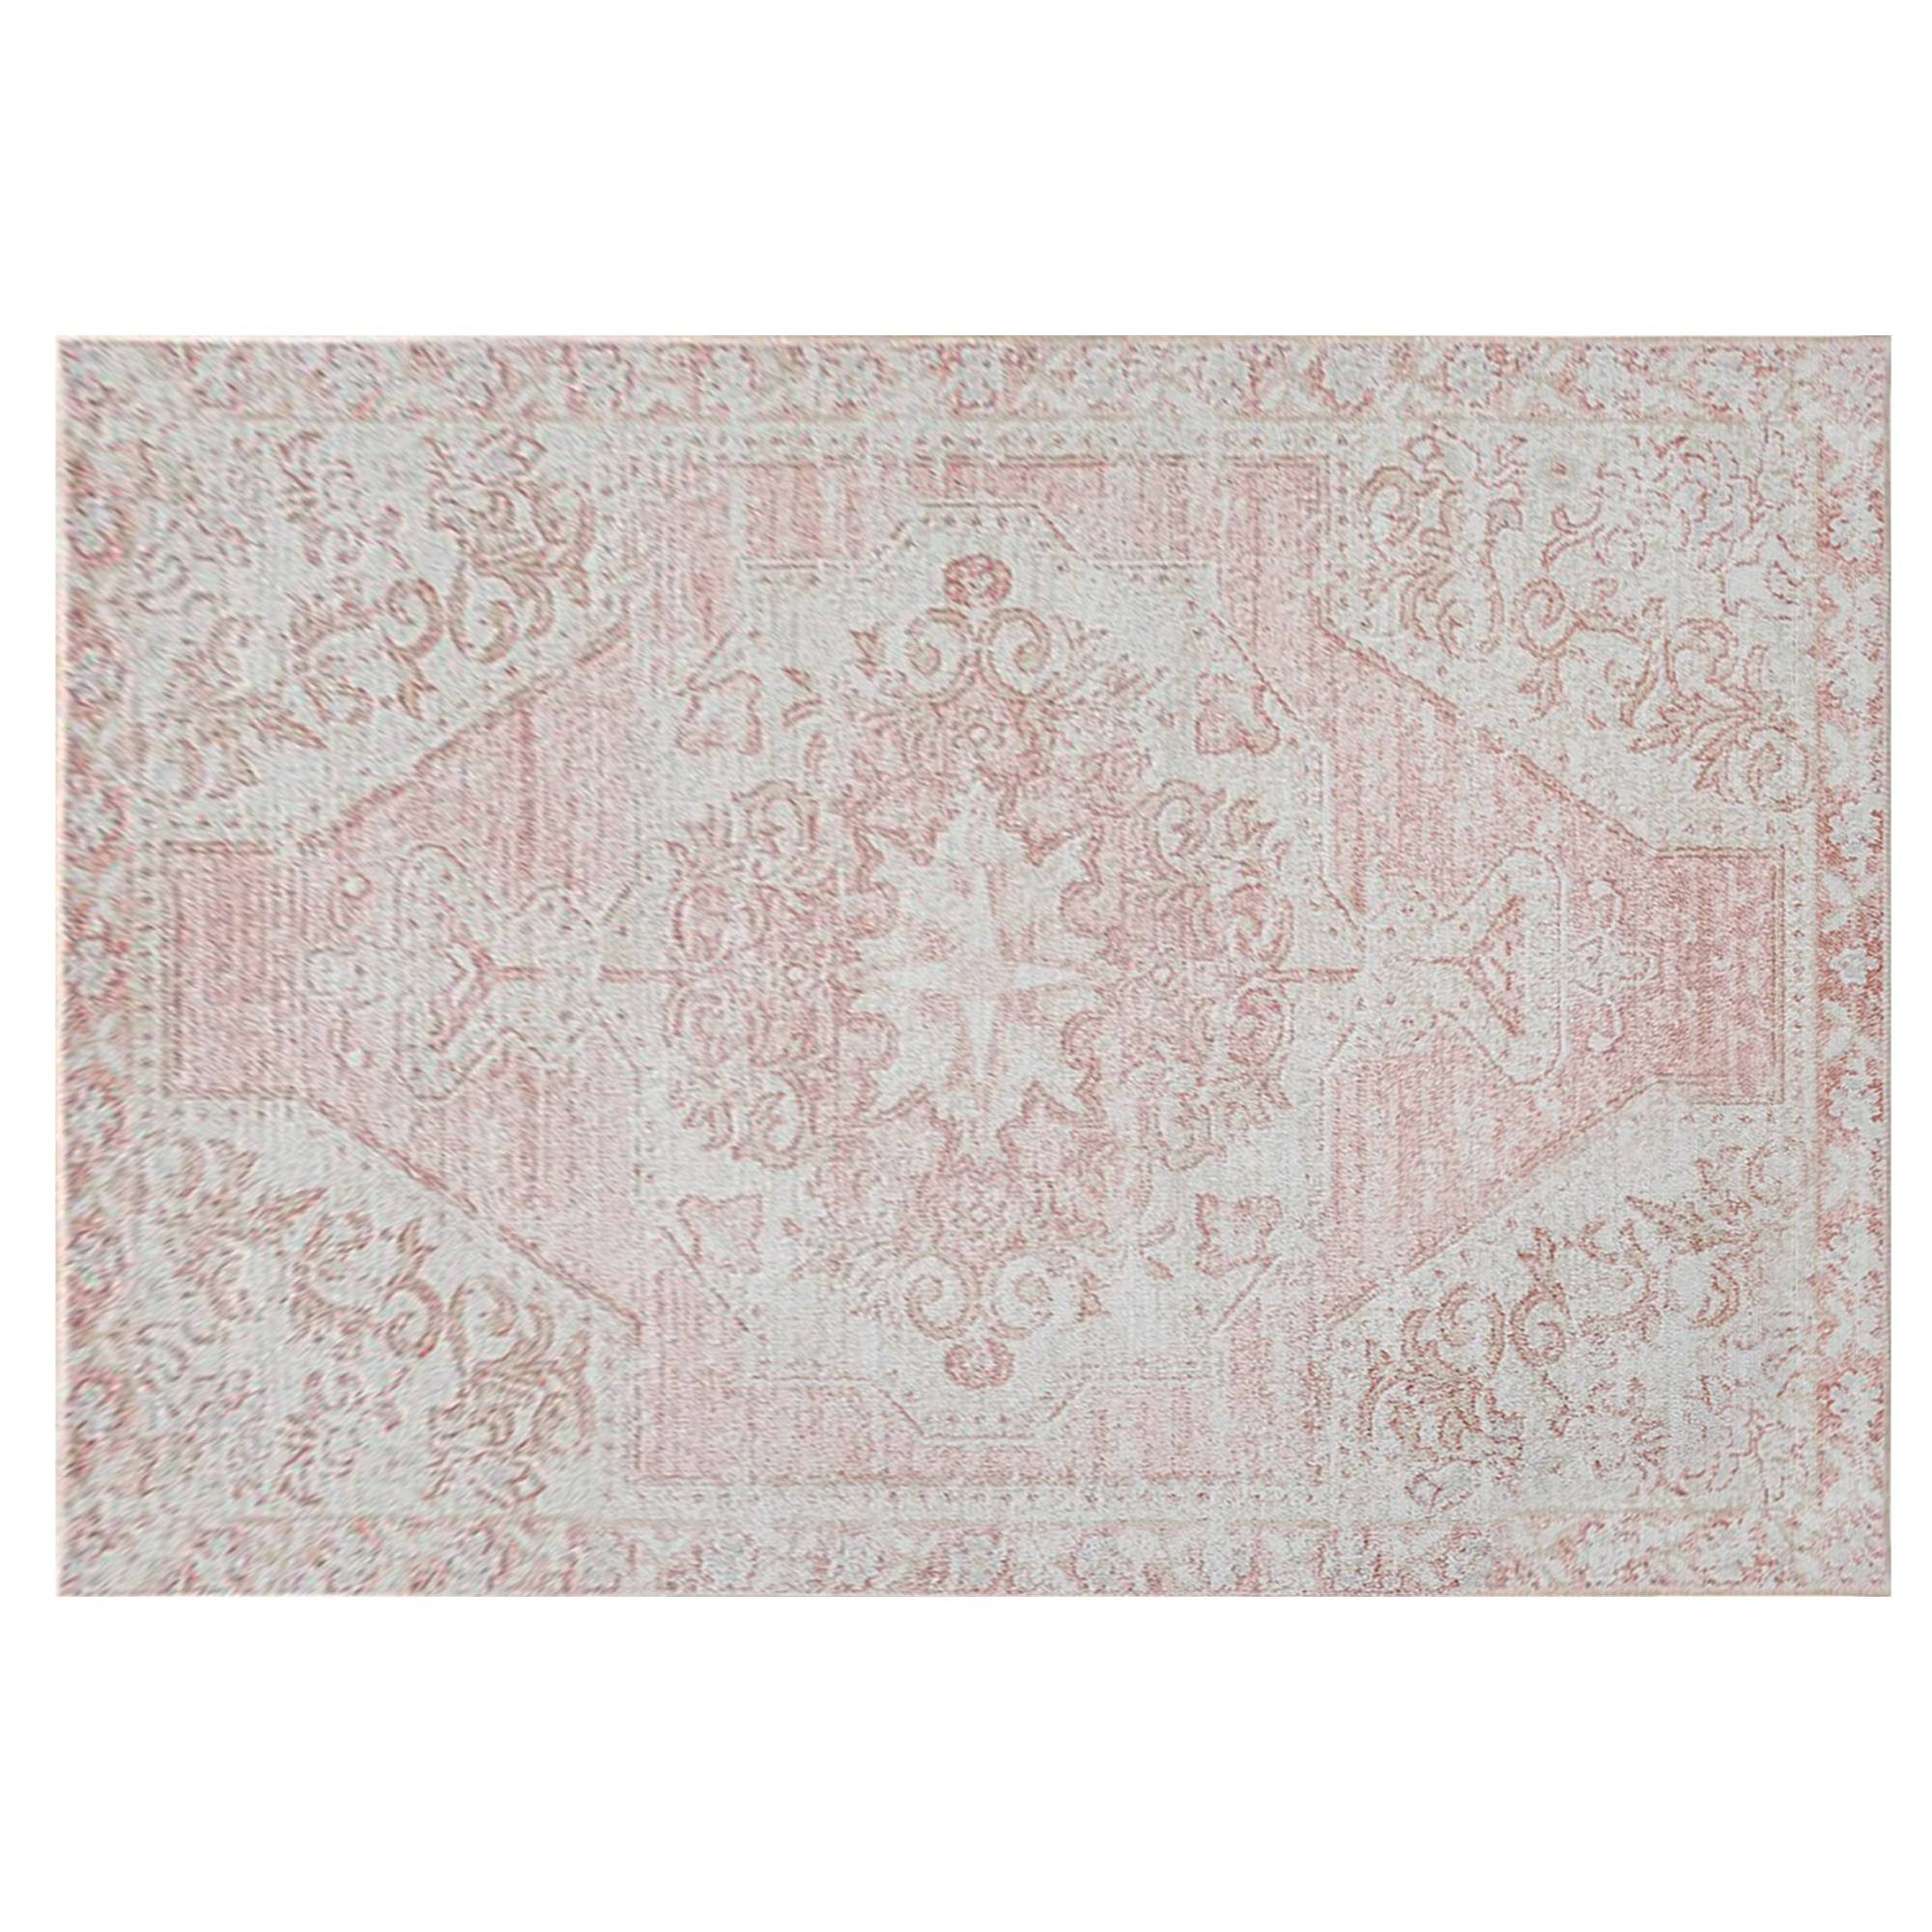 Jebil tapijt 160x230cm Bloemenpatroon Wit crème en Roze